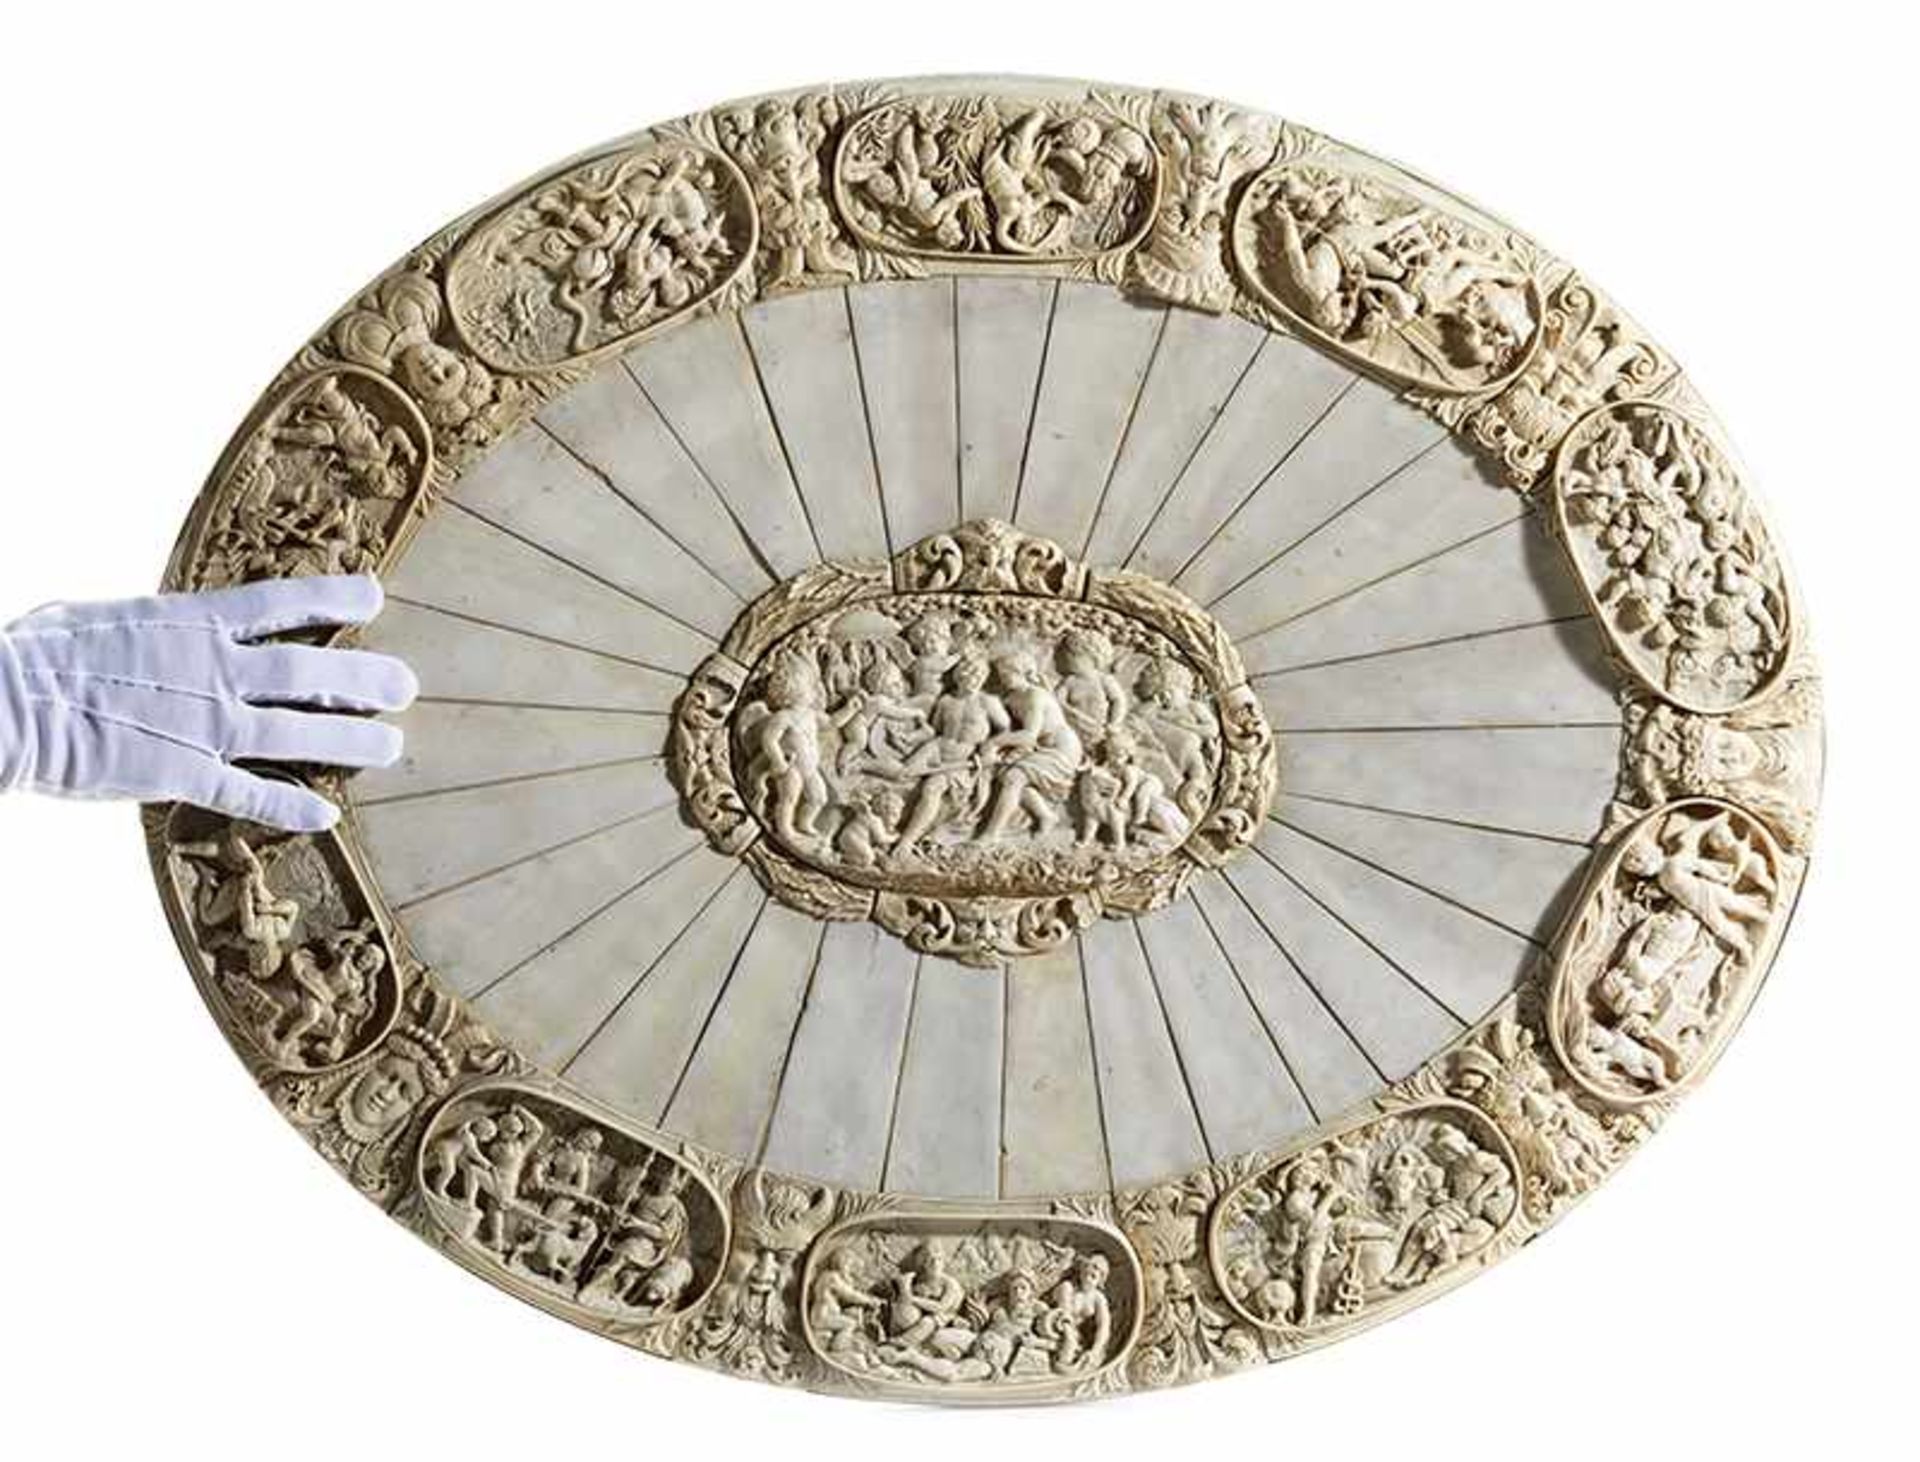 Monumentale äußerst fein gearbeitete ElfenbeinplatteMaximaler Durchmesser: 75 cm. Deutschland, 19. - Image 6 of 9